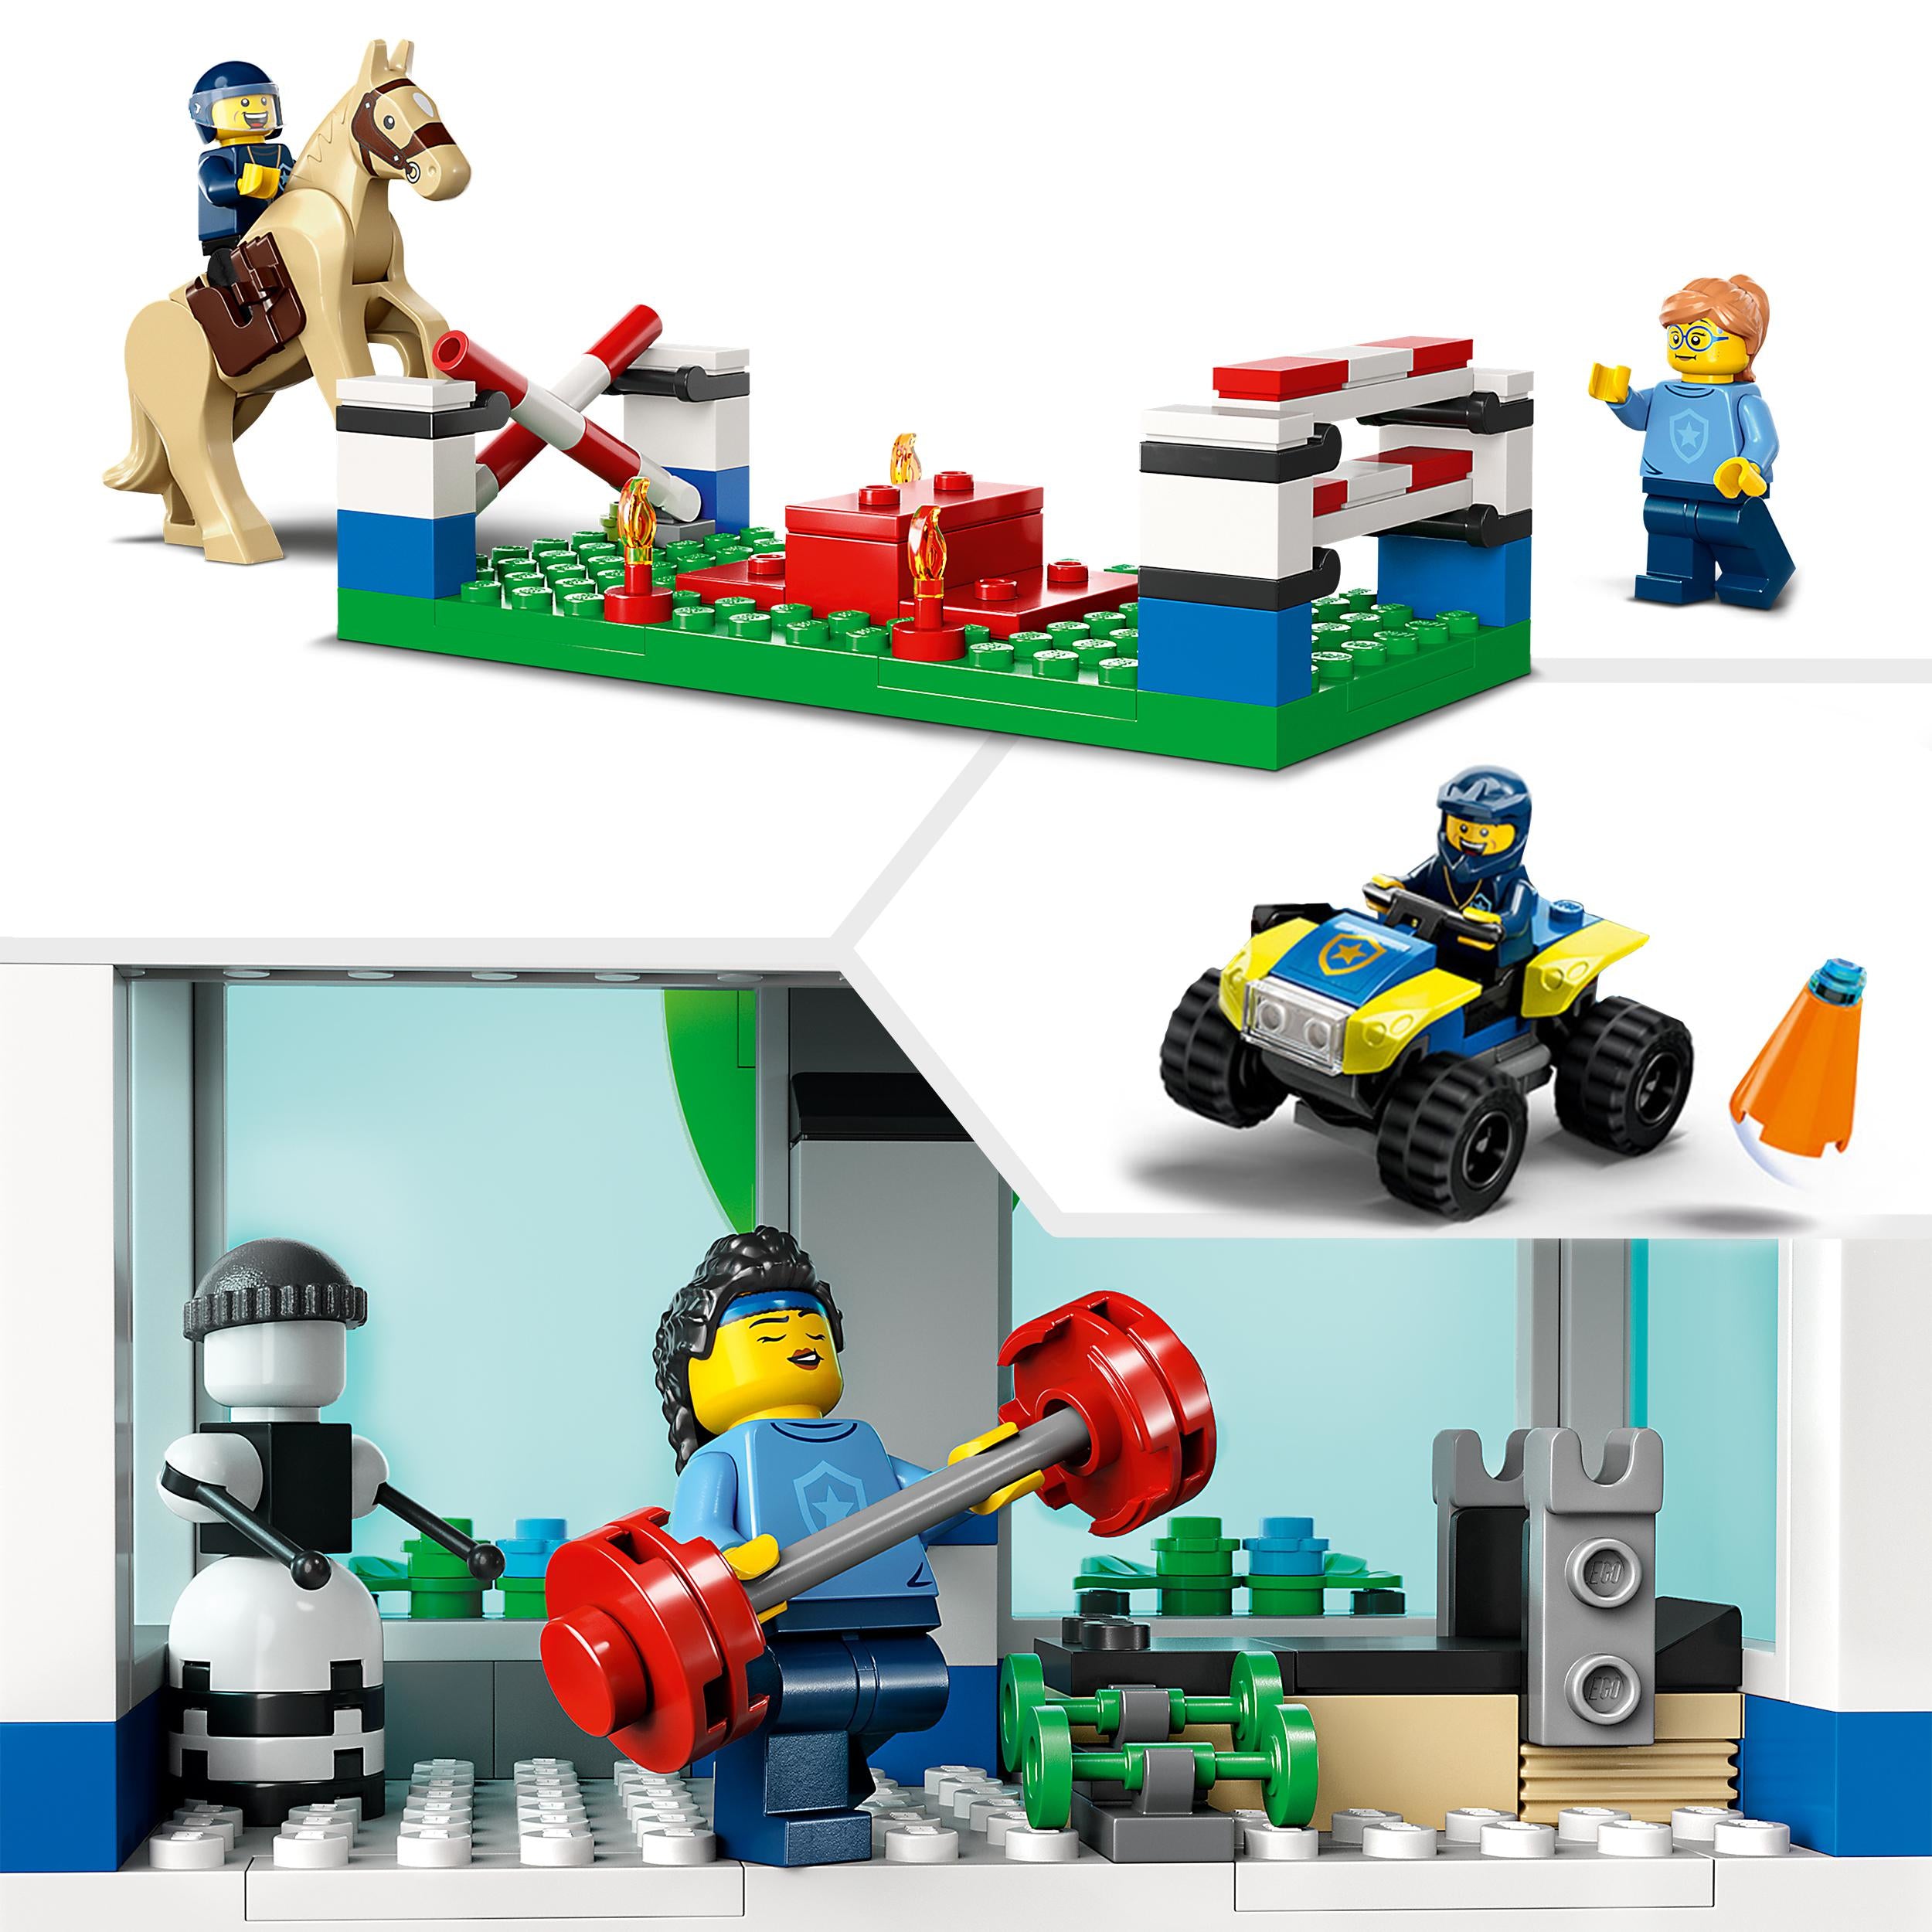 60372 LEGO City Police - Accademia di addestramento della polizia